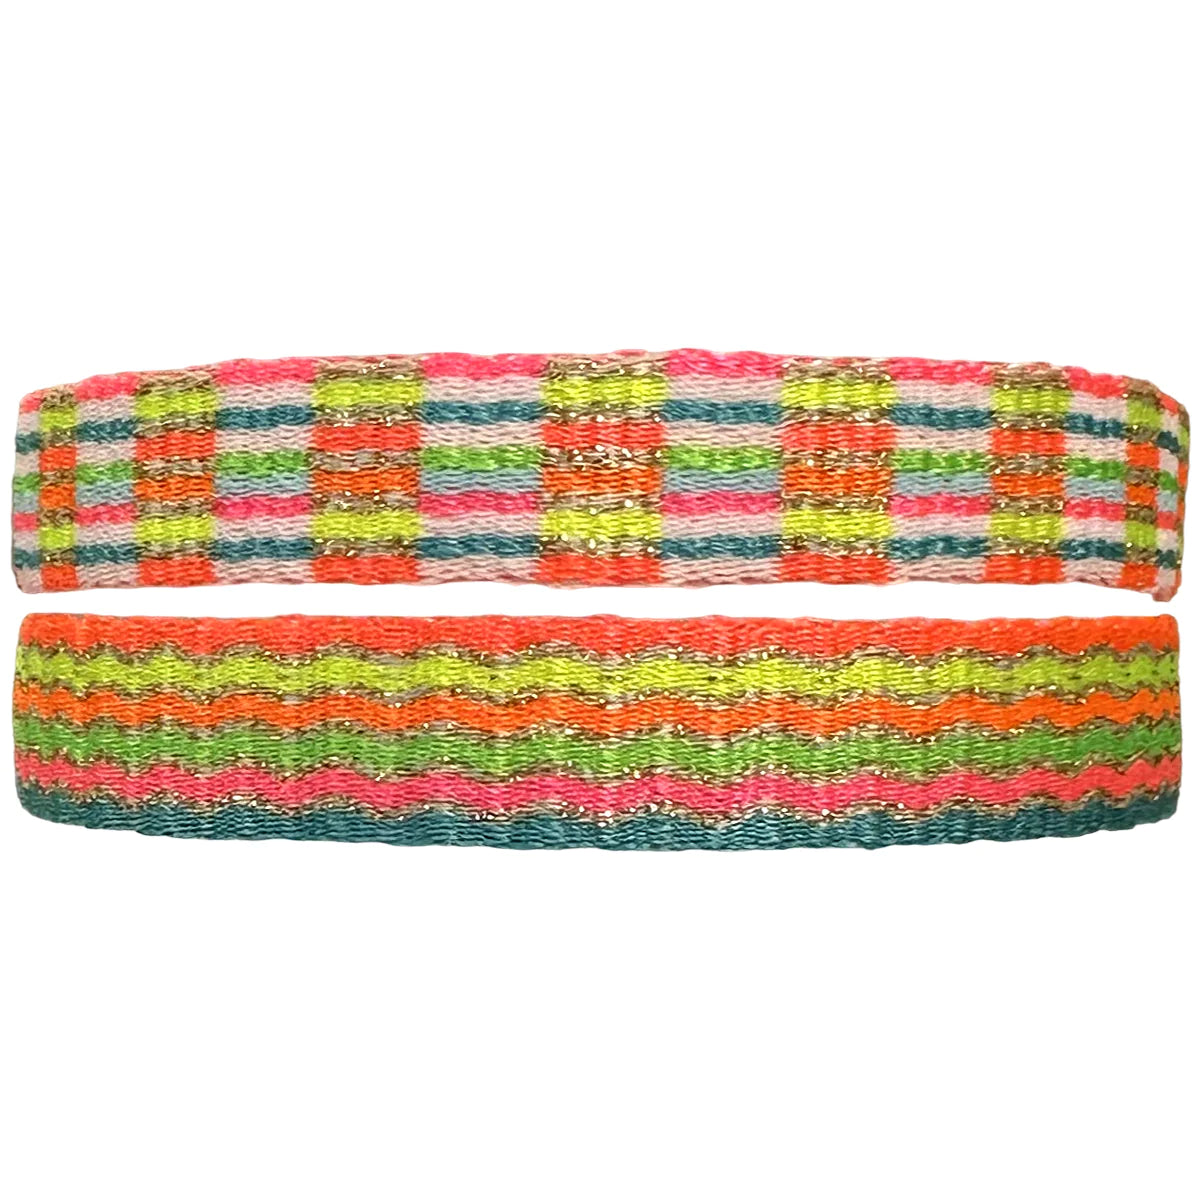 leju armband neon colors breed (kies je soort)